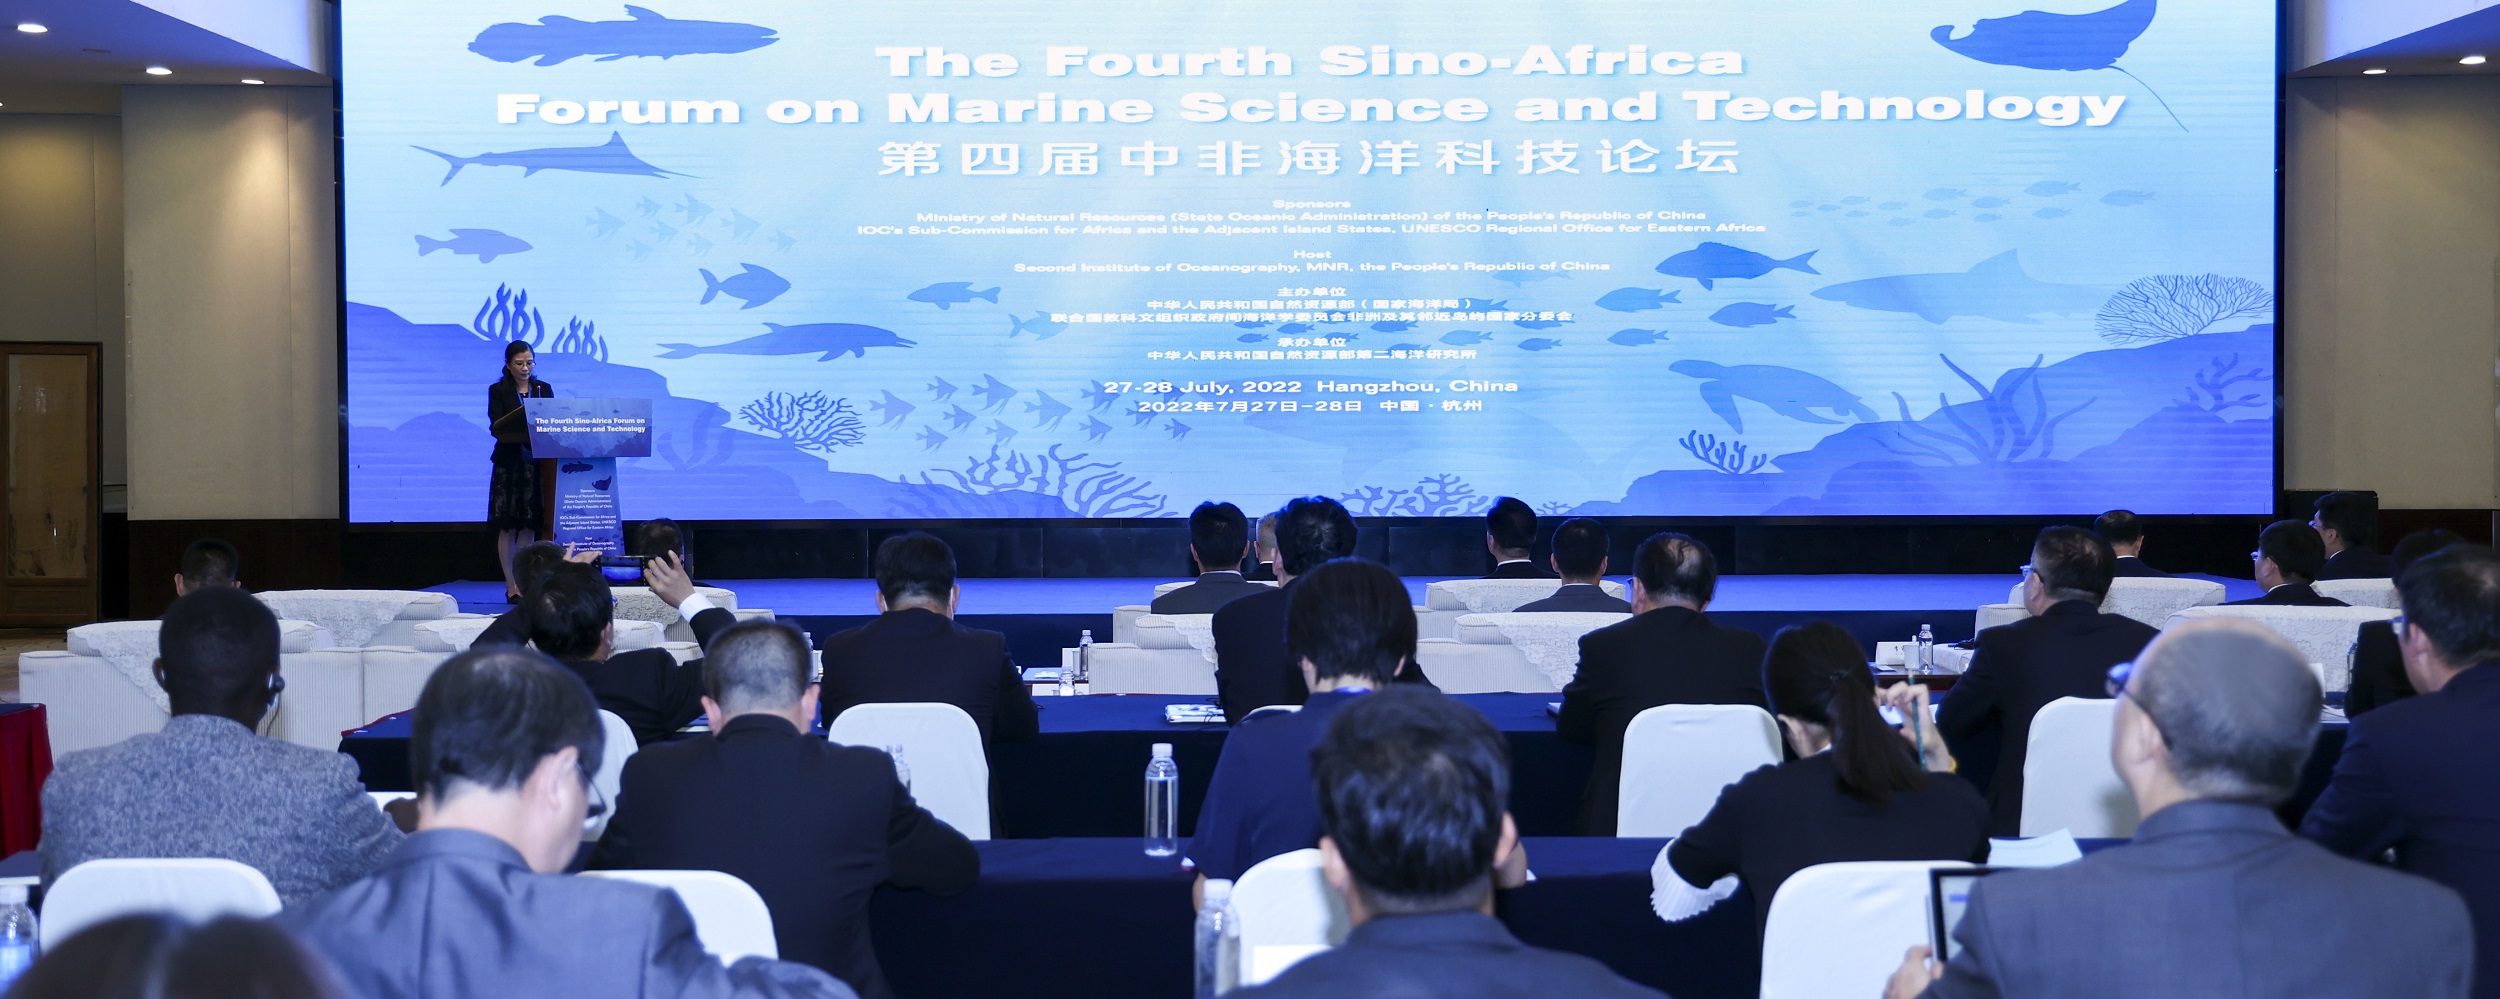 第四届中非海洋科技论坛在杭州召开